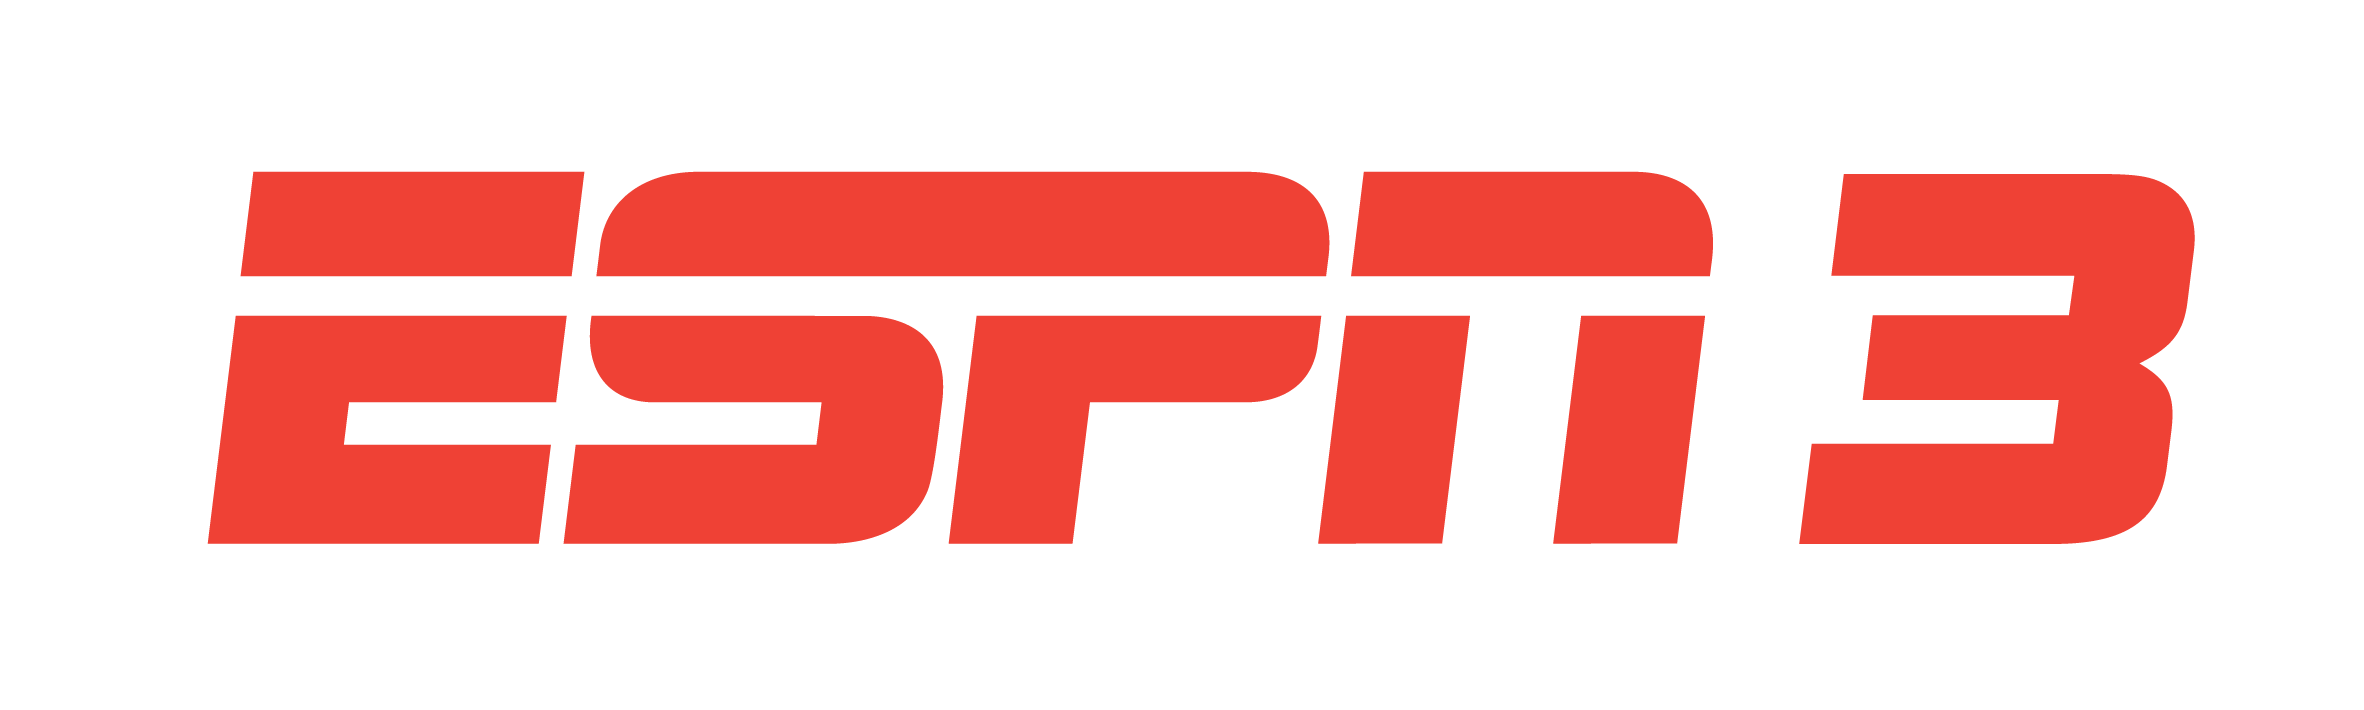 logo-foxsports-3